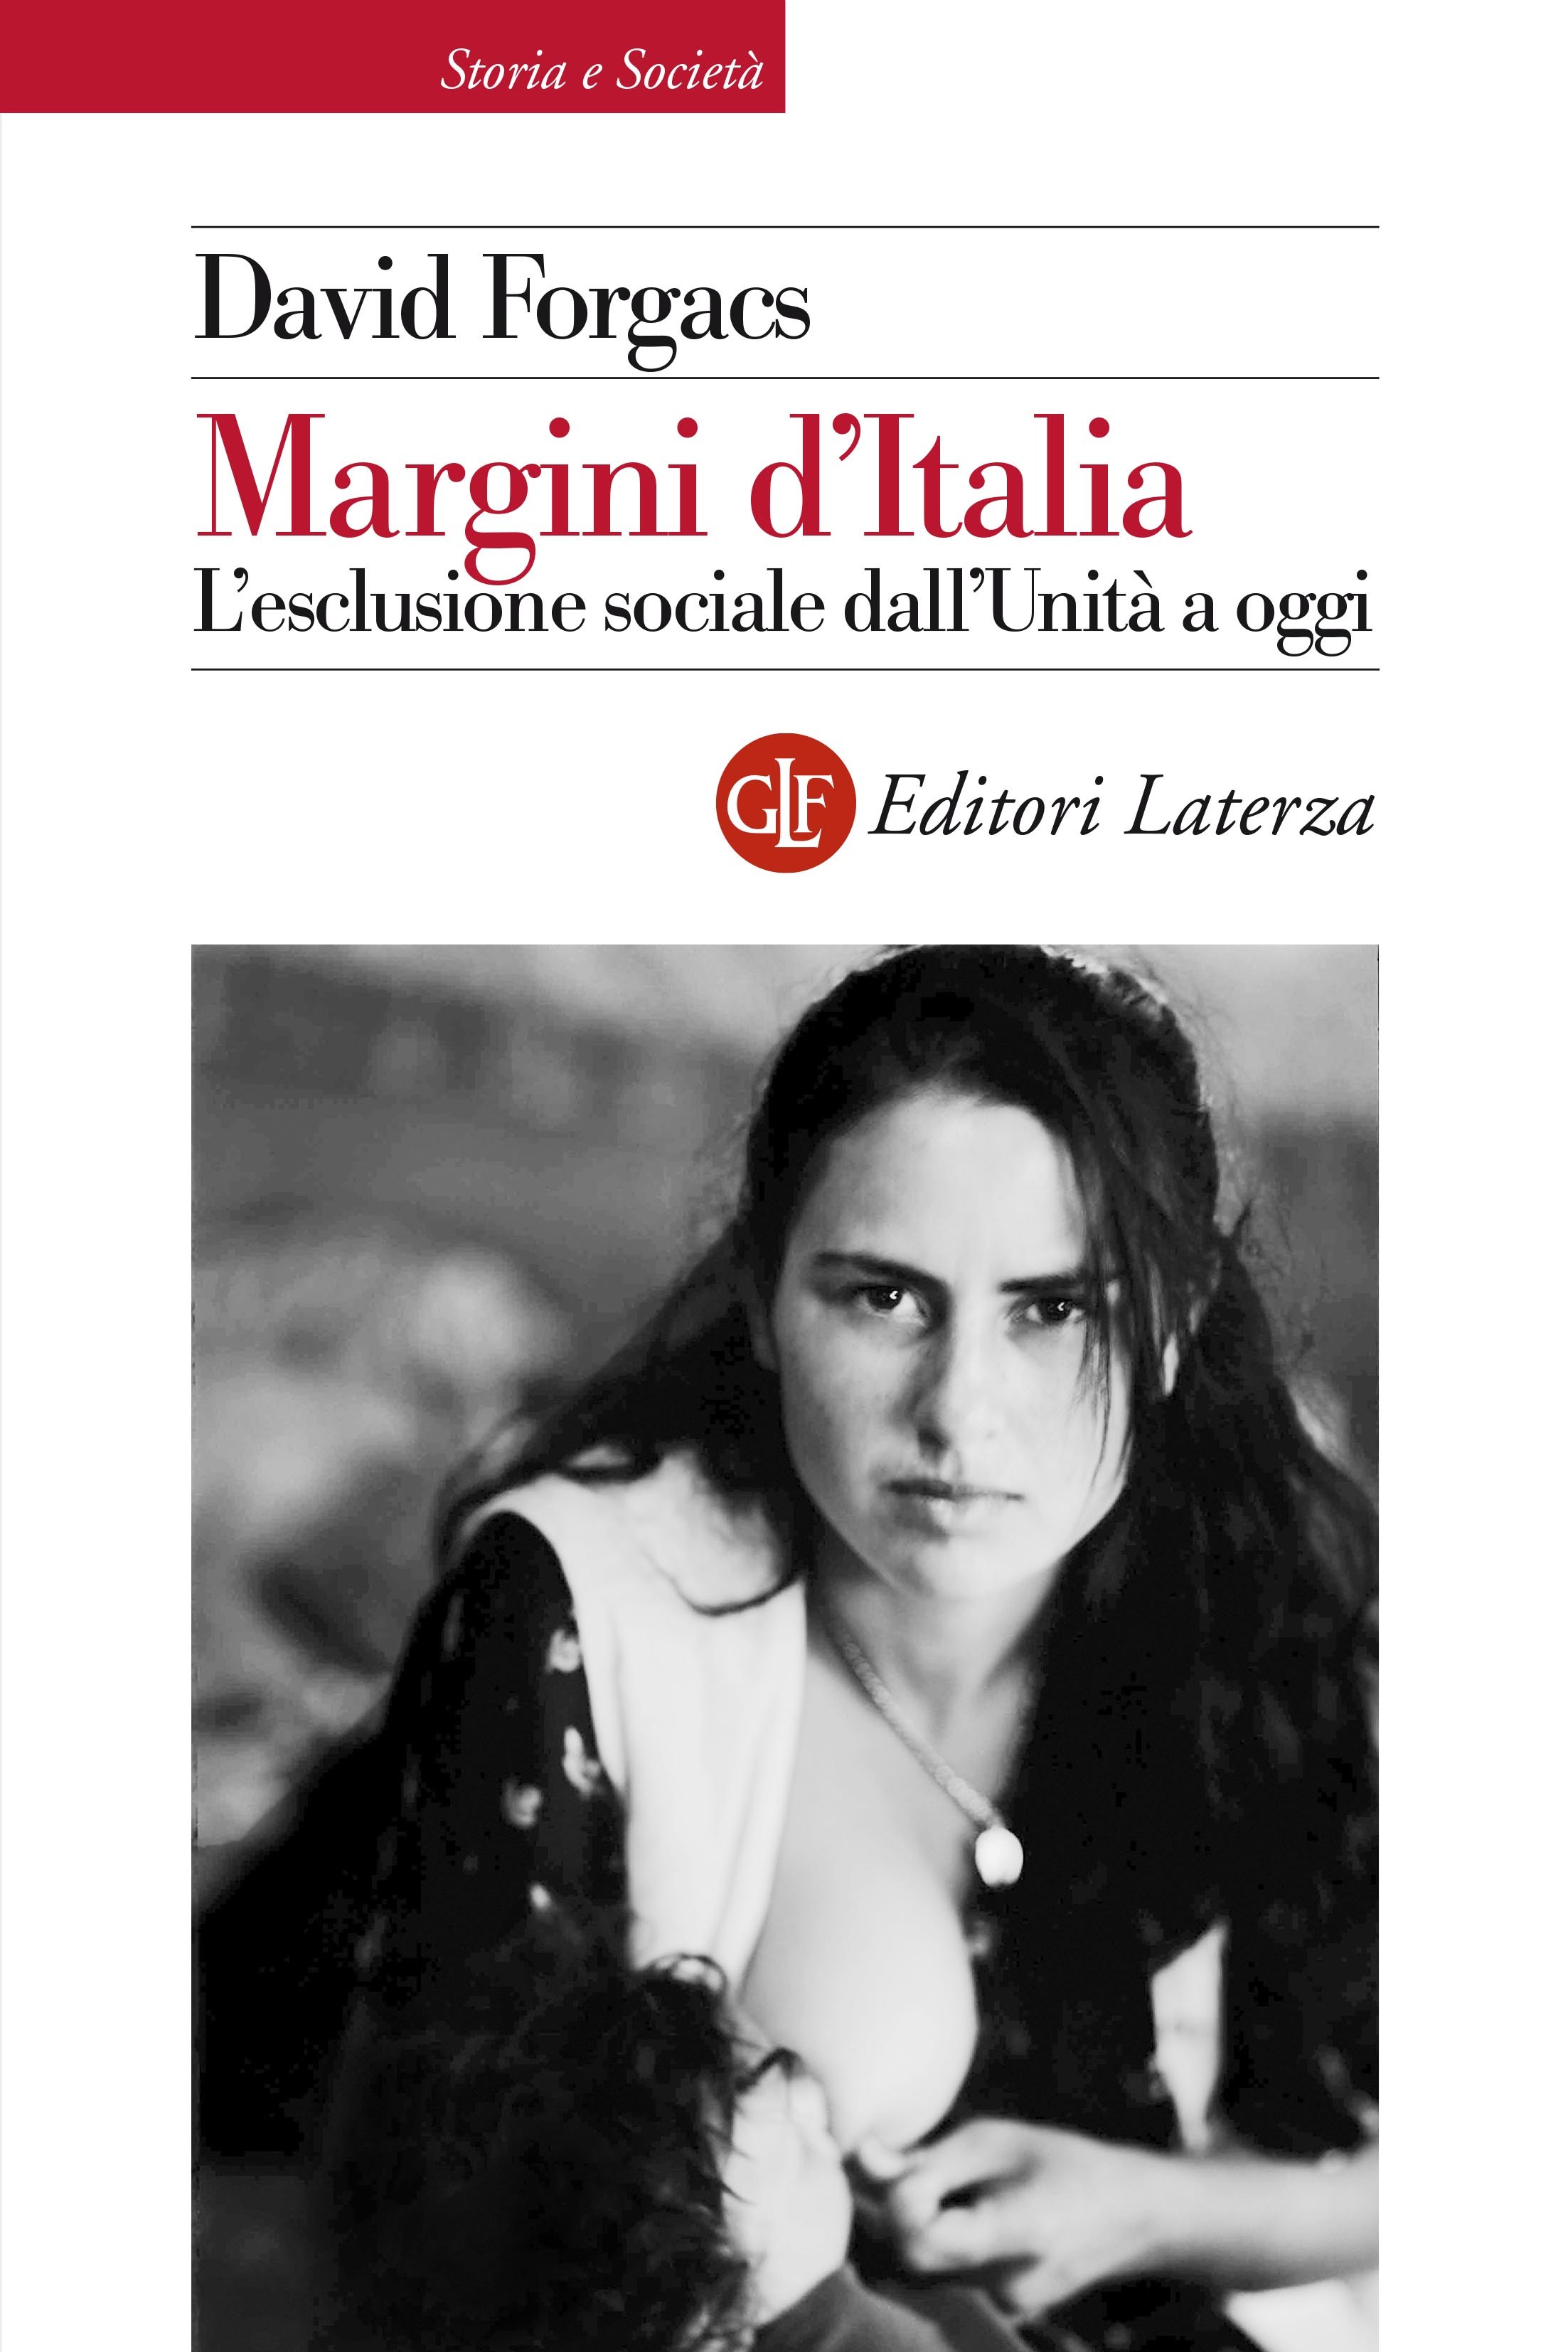 Margini d'Italia - Librerie.coop